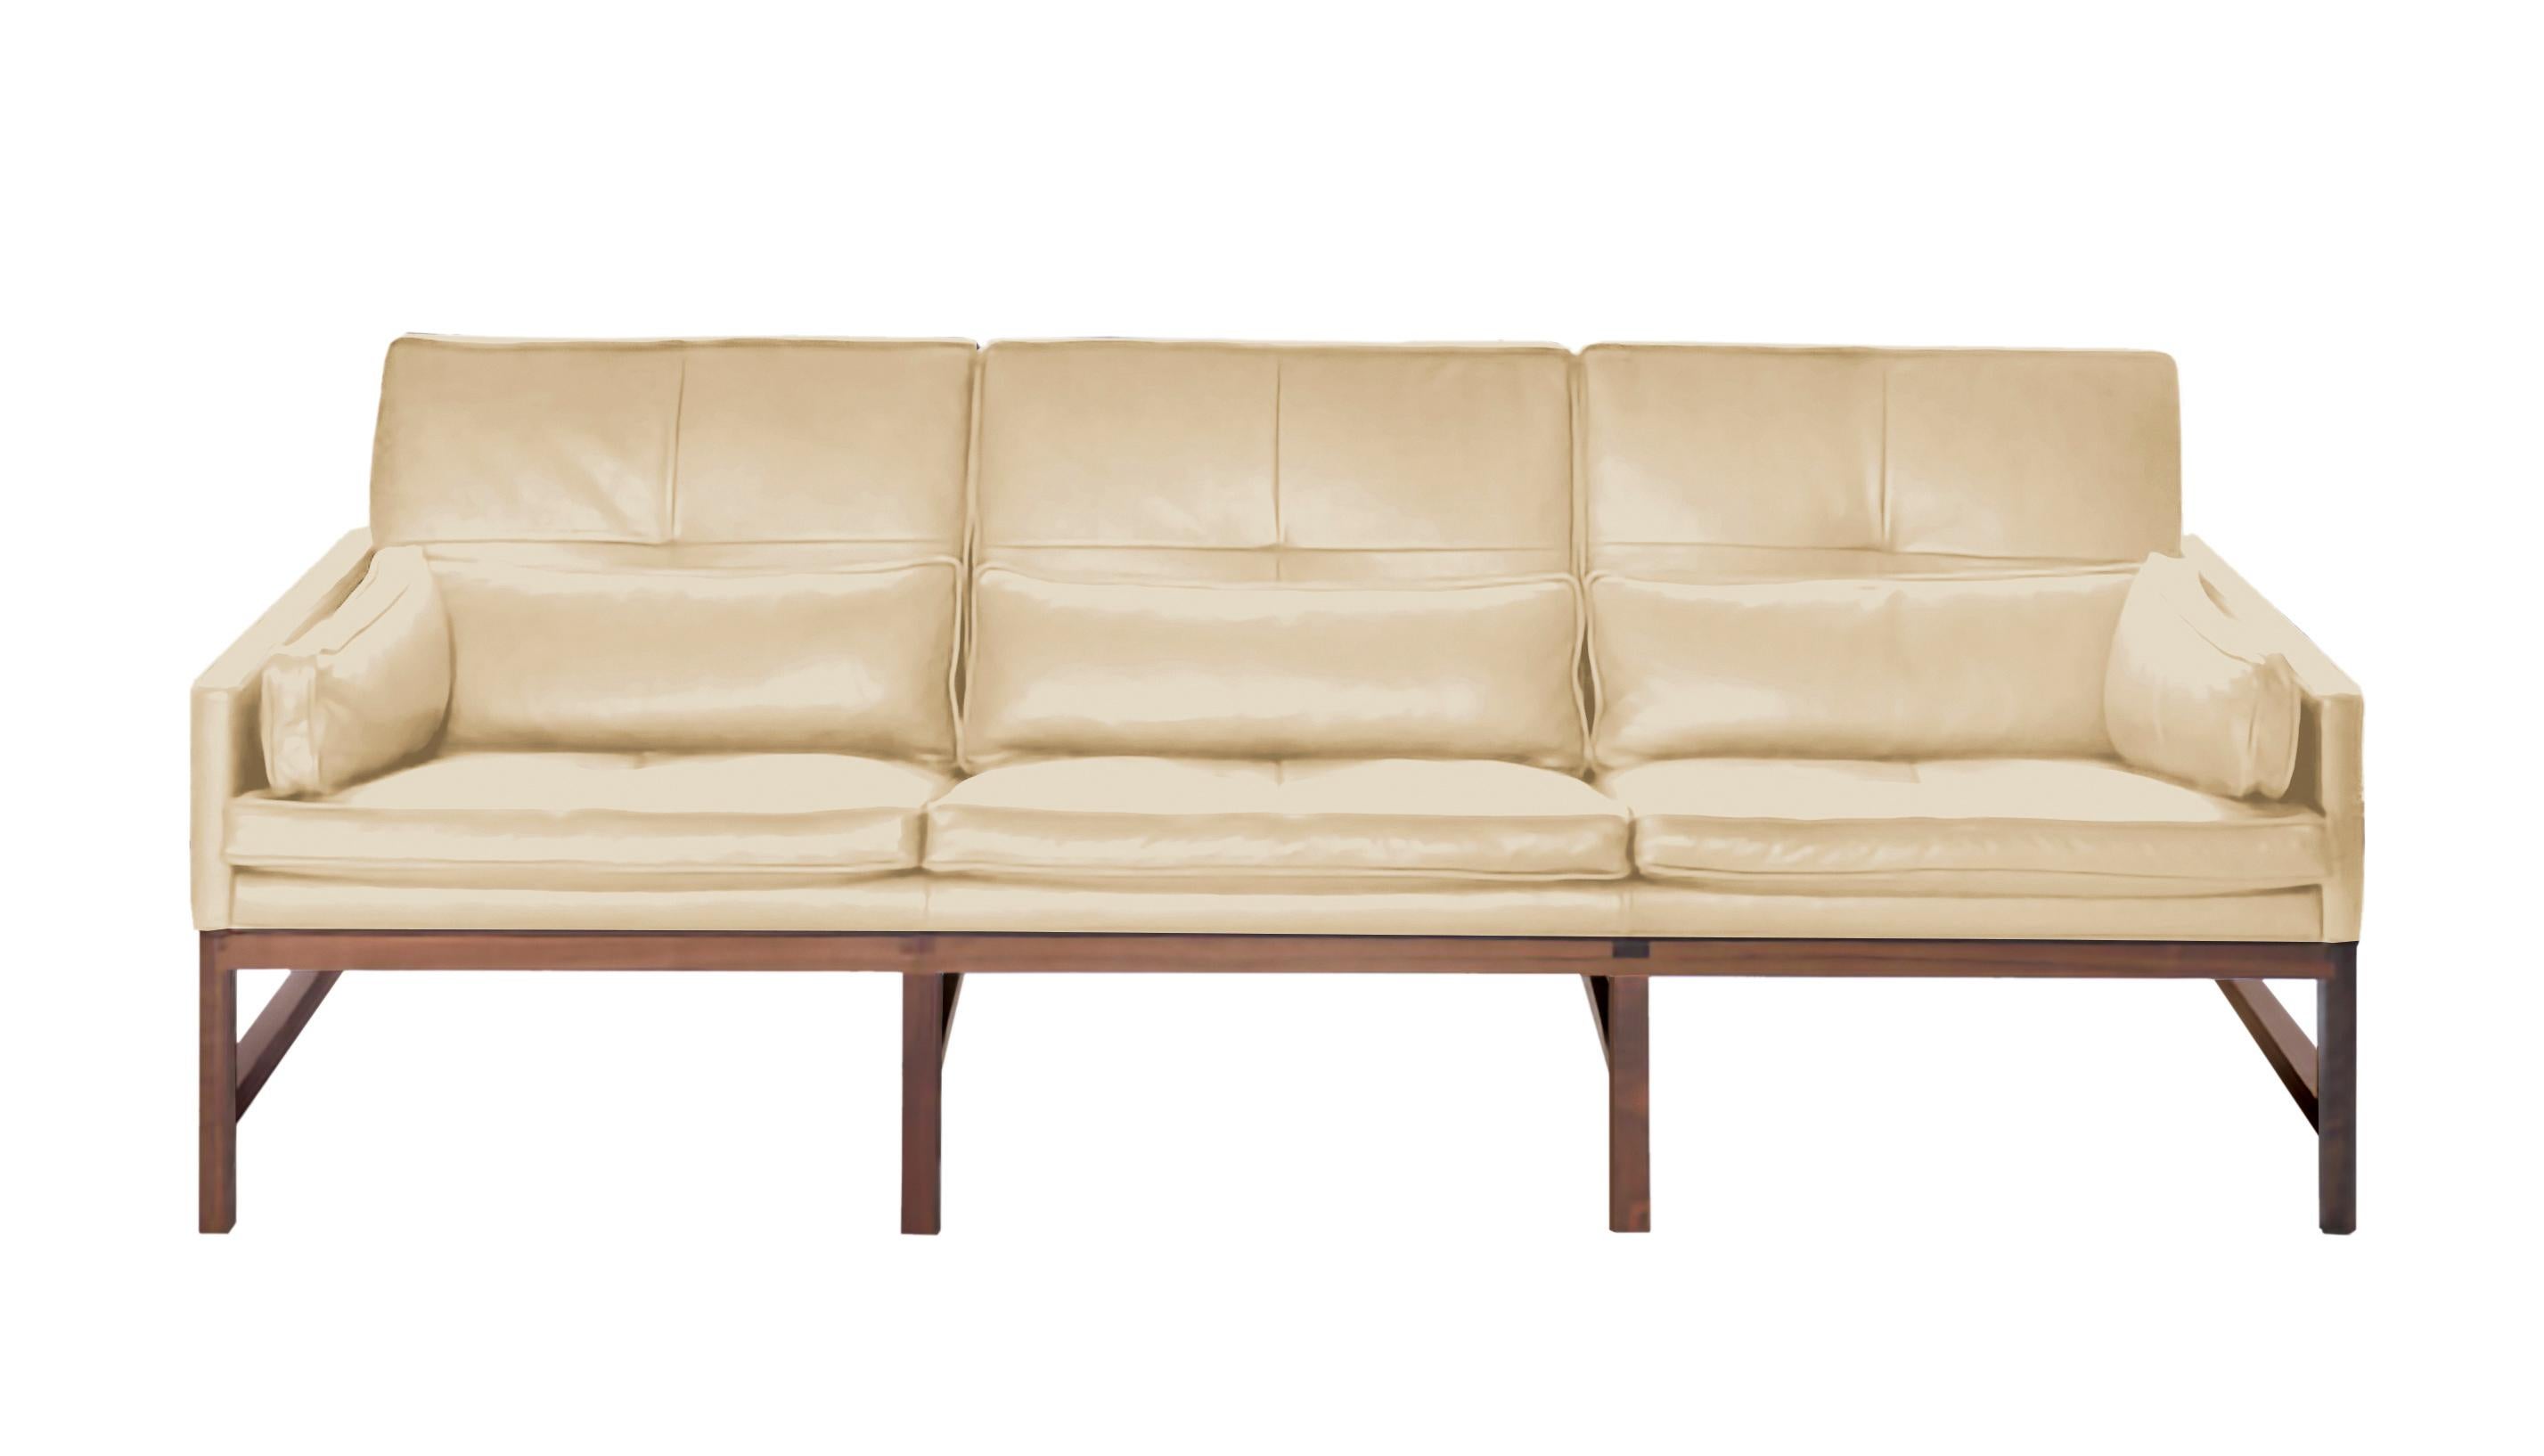 Im Angebot: Sofa mit niedriger Rückenlehne und Holzrahmen aus Nussbaum und Leder, entworfen von Craig Bassam, Beige (Comfort 02067 Beige)